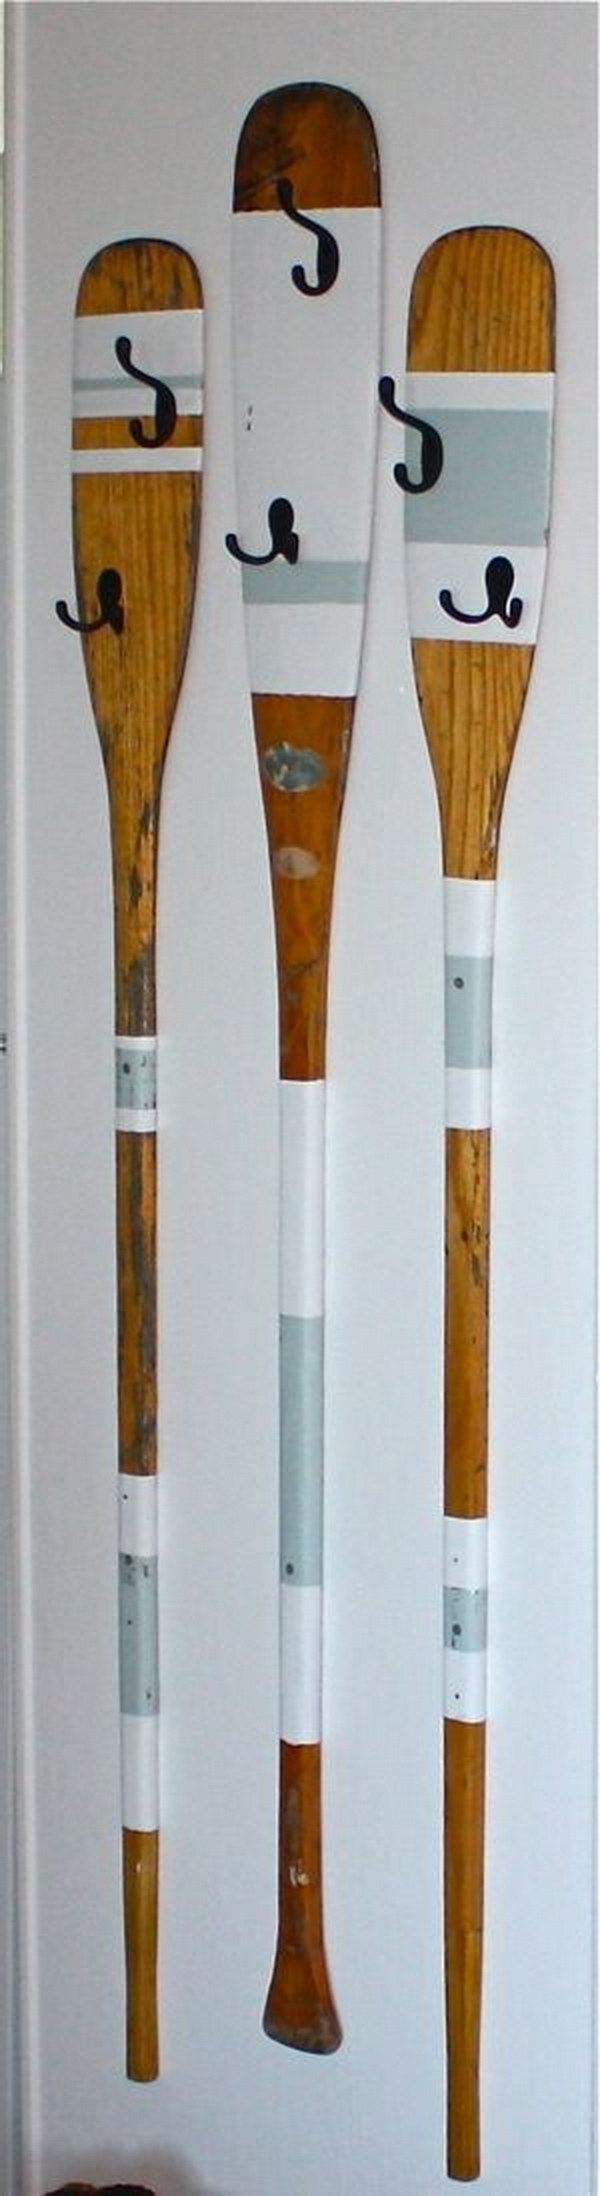 Upcycled Rowing Oars Coat Hangers. 